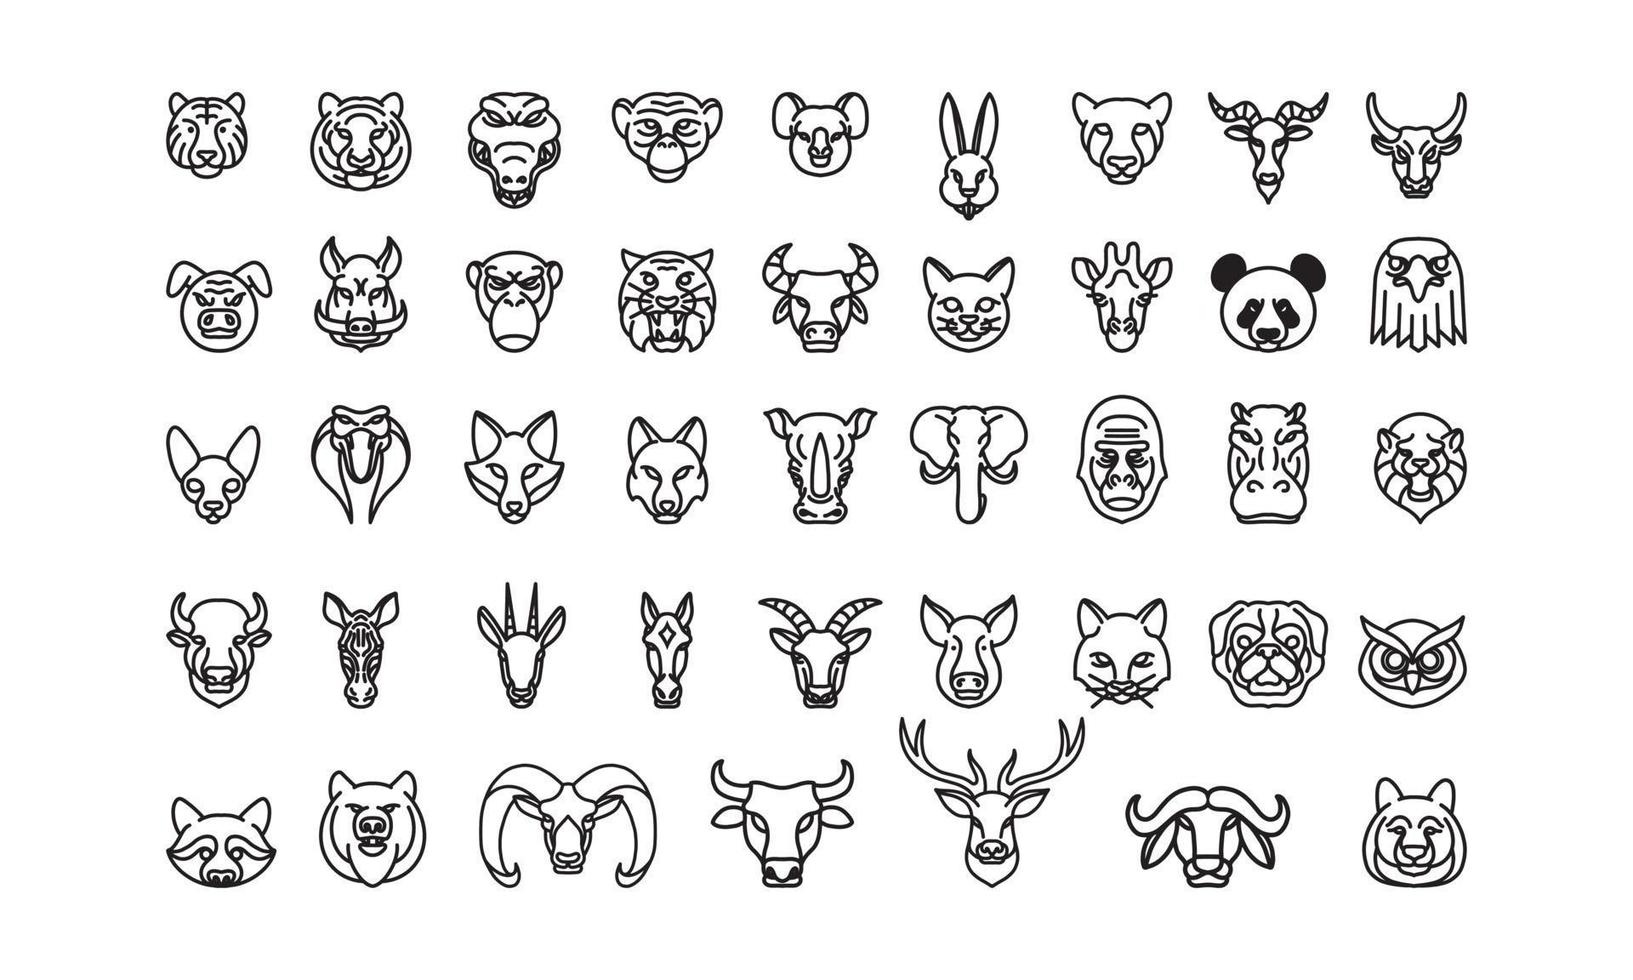 Tiersymbole gesetzt, Vektorlinie Kunst, Satz von 43 Tierköpfen, Tierillustration, Zoo- und Farmtiersymbole, Natursymbole gesetzt vektor